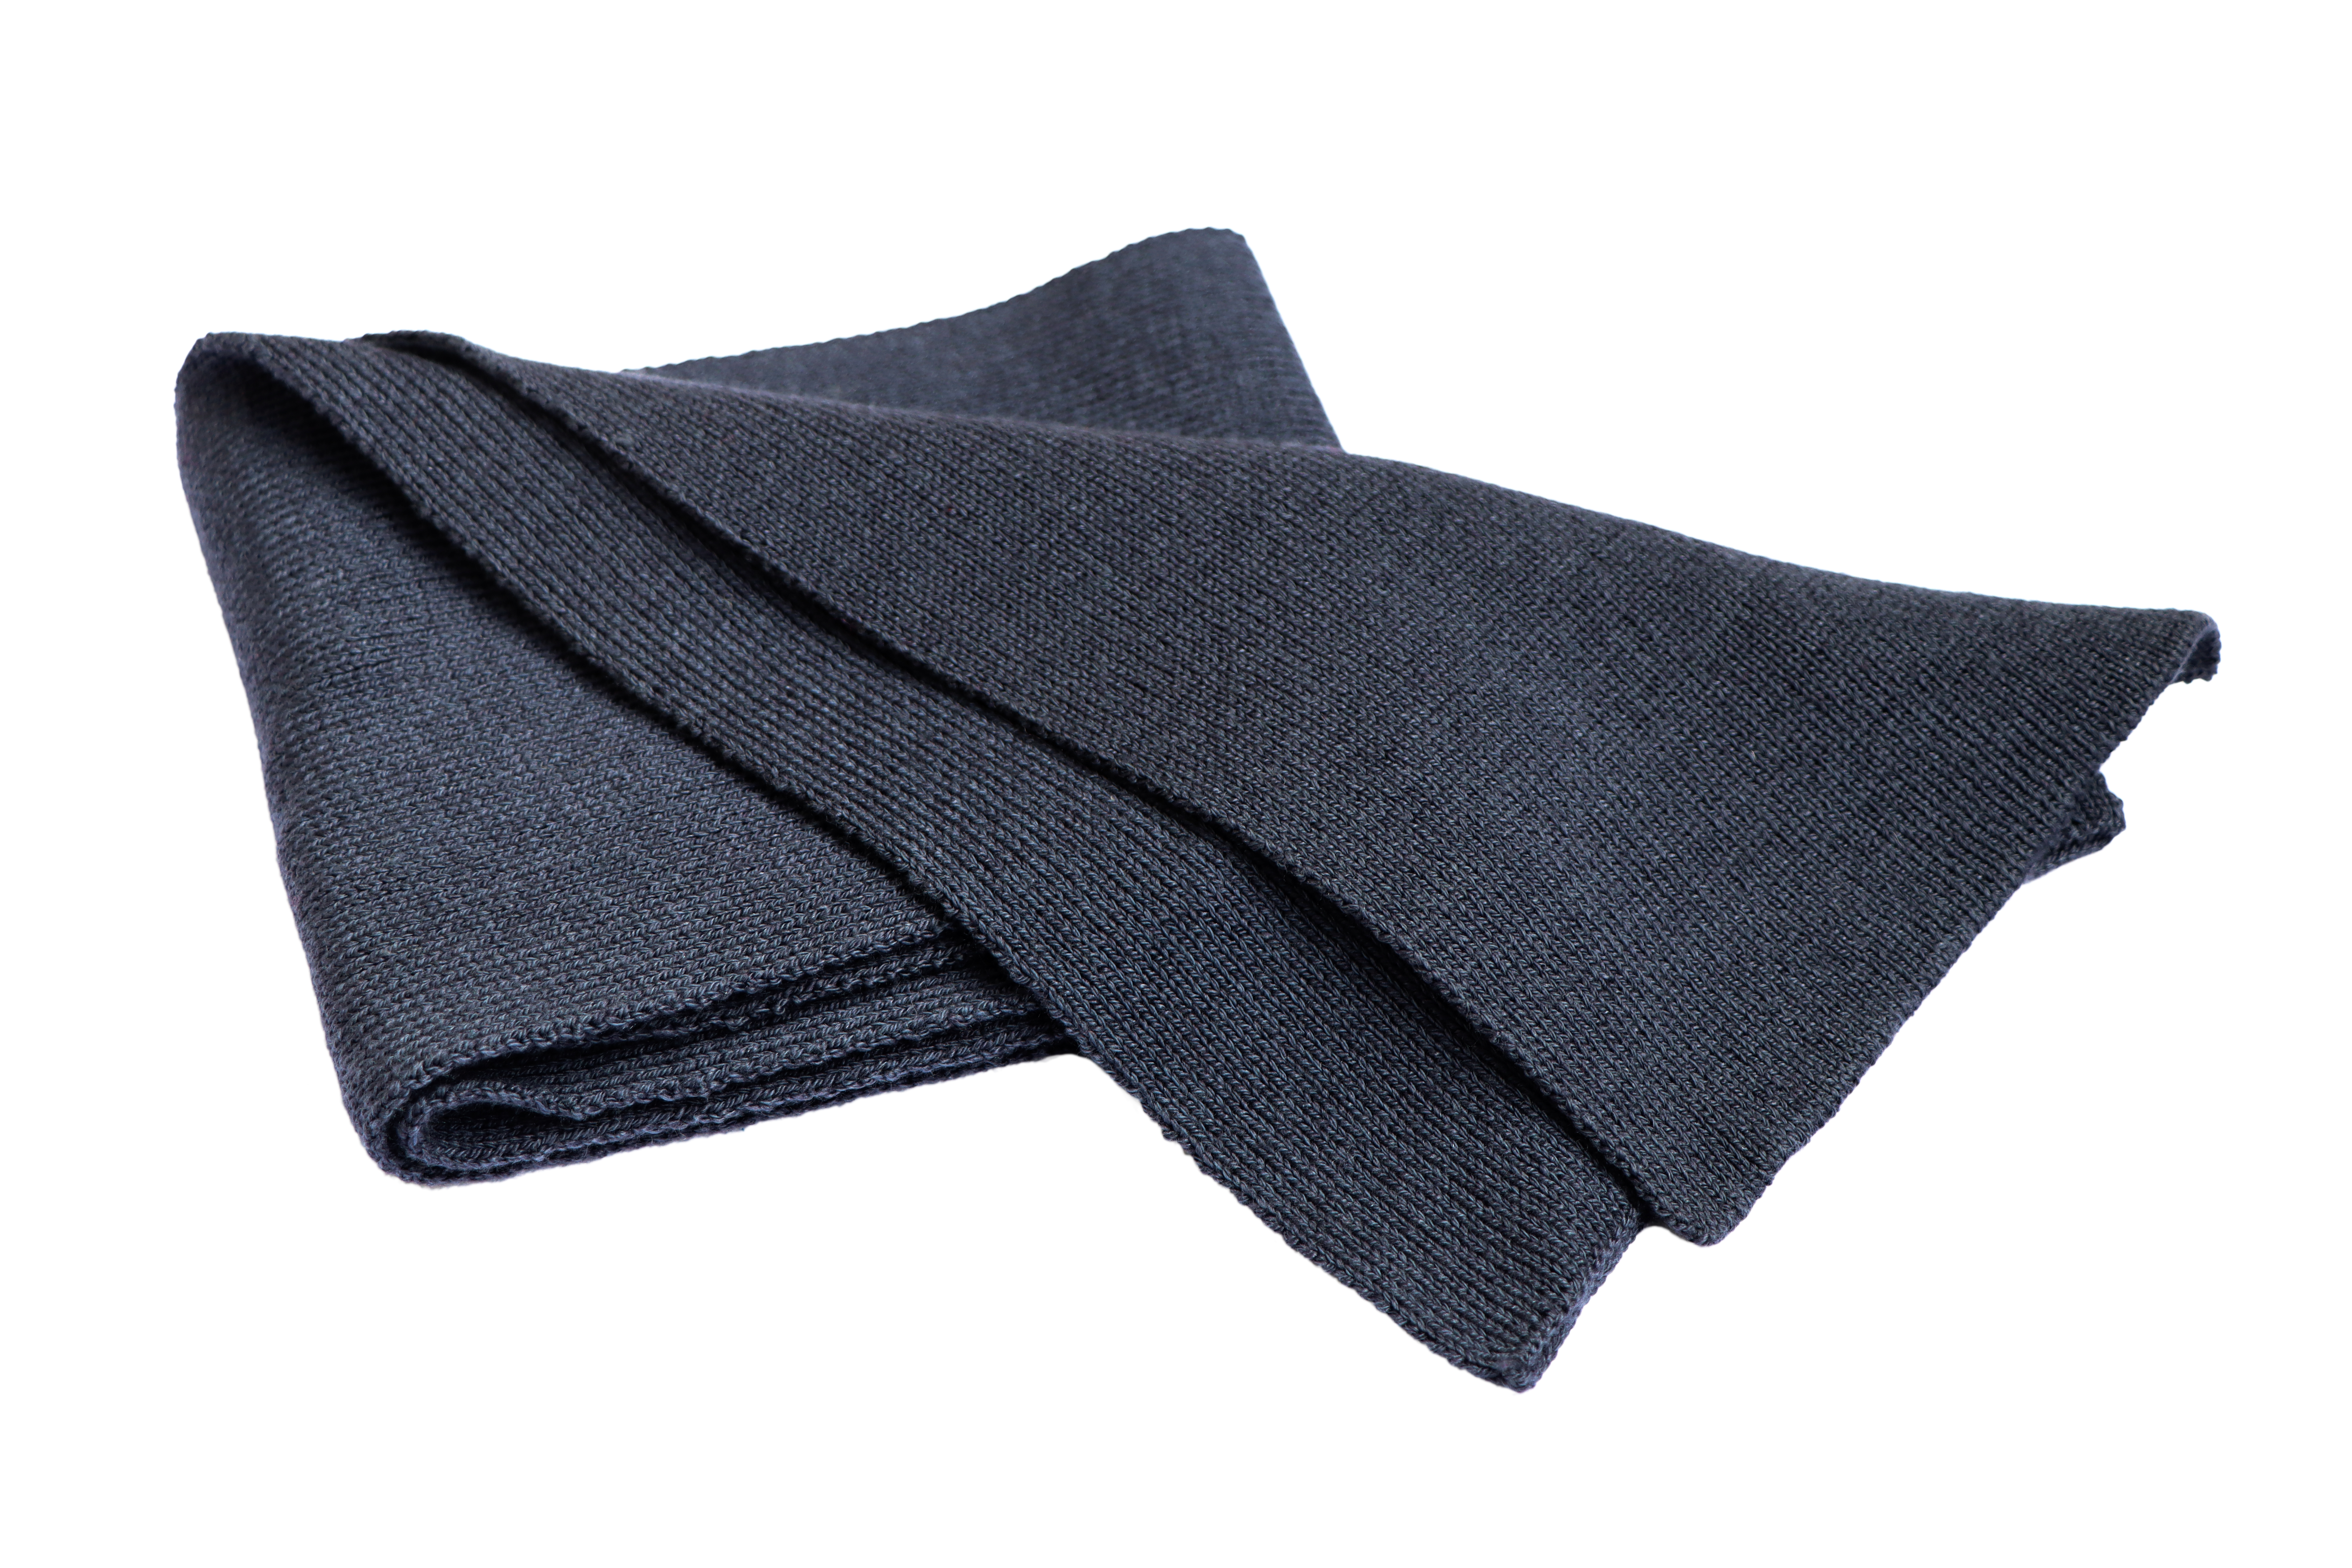 Blaugrauer Kinder-Schal mit Wolle